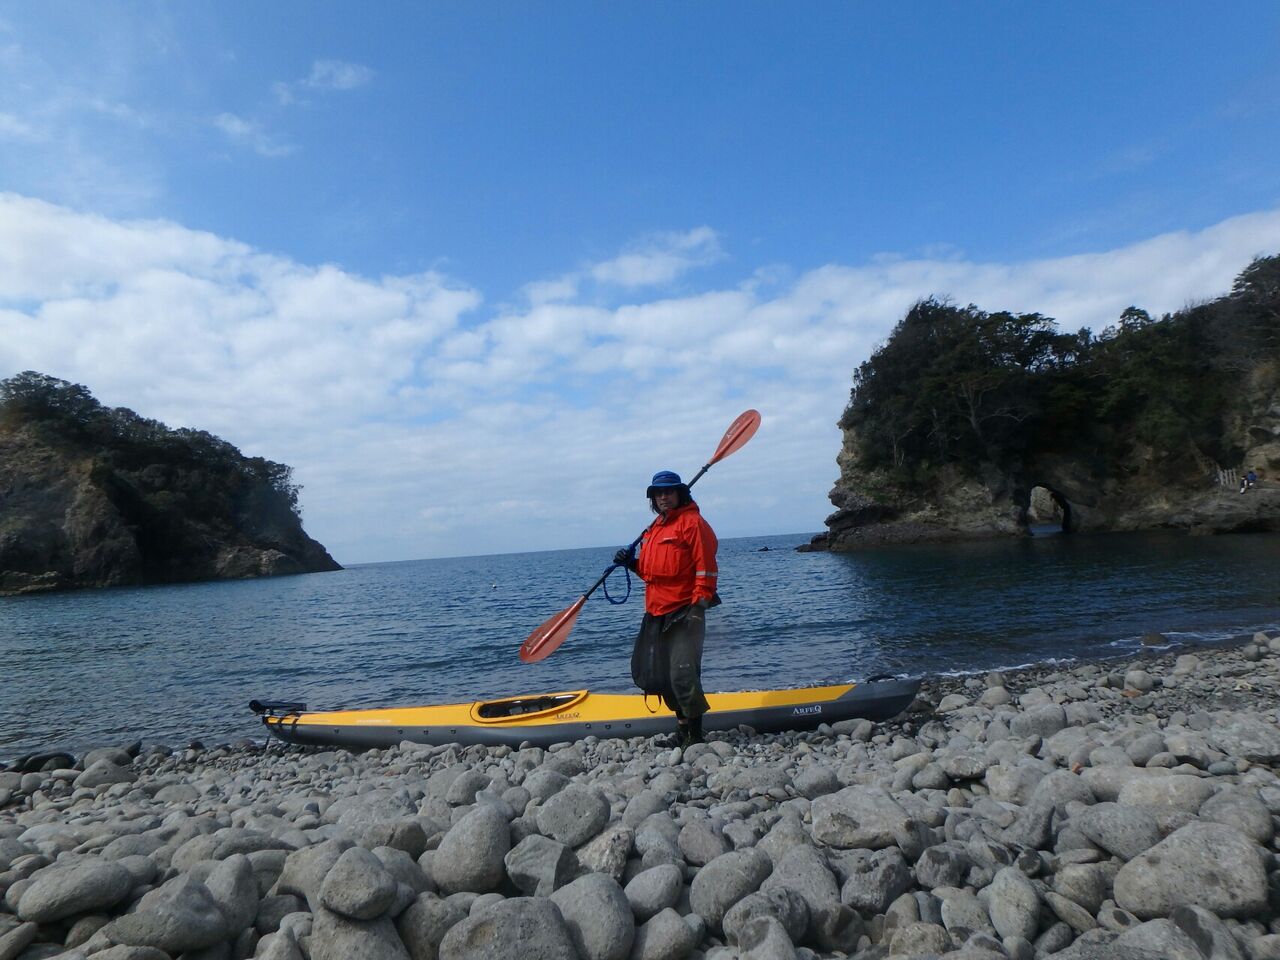 伊豆浮島海岸シーカヤックトレーニング第2日目 ぴょん太郎アスリートのブログ